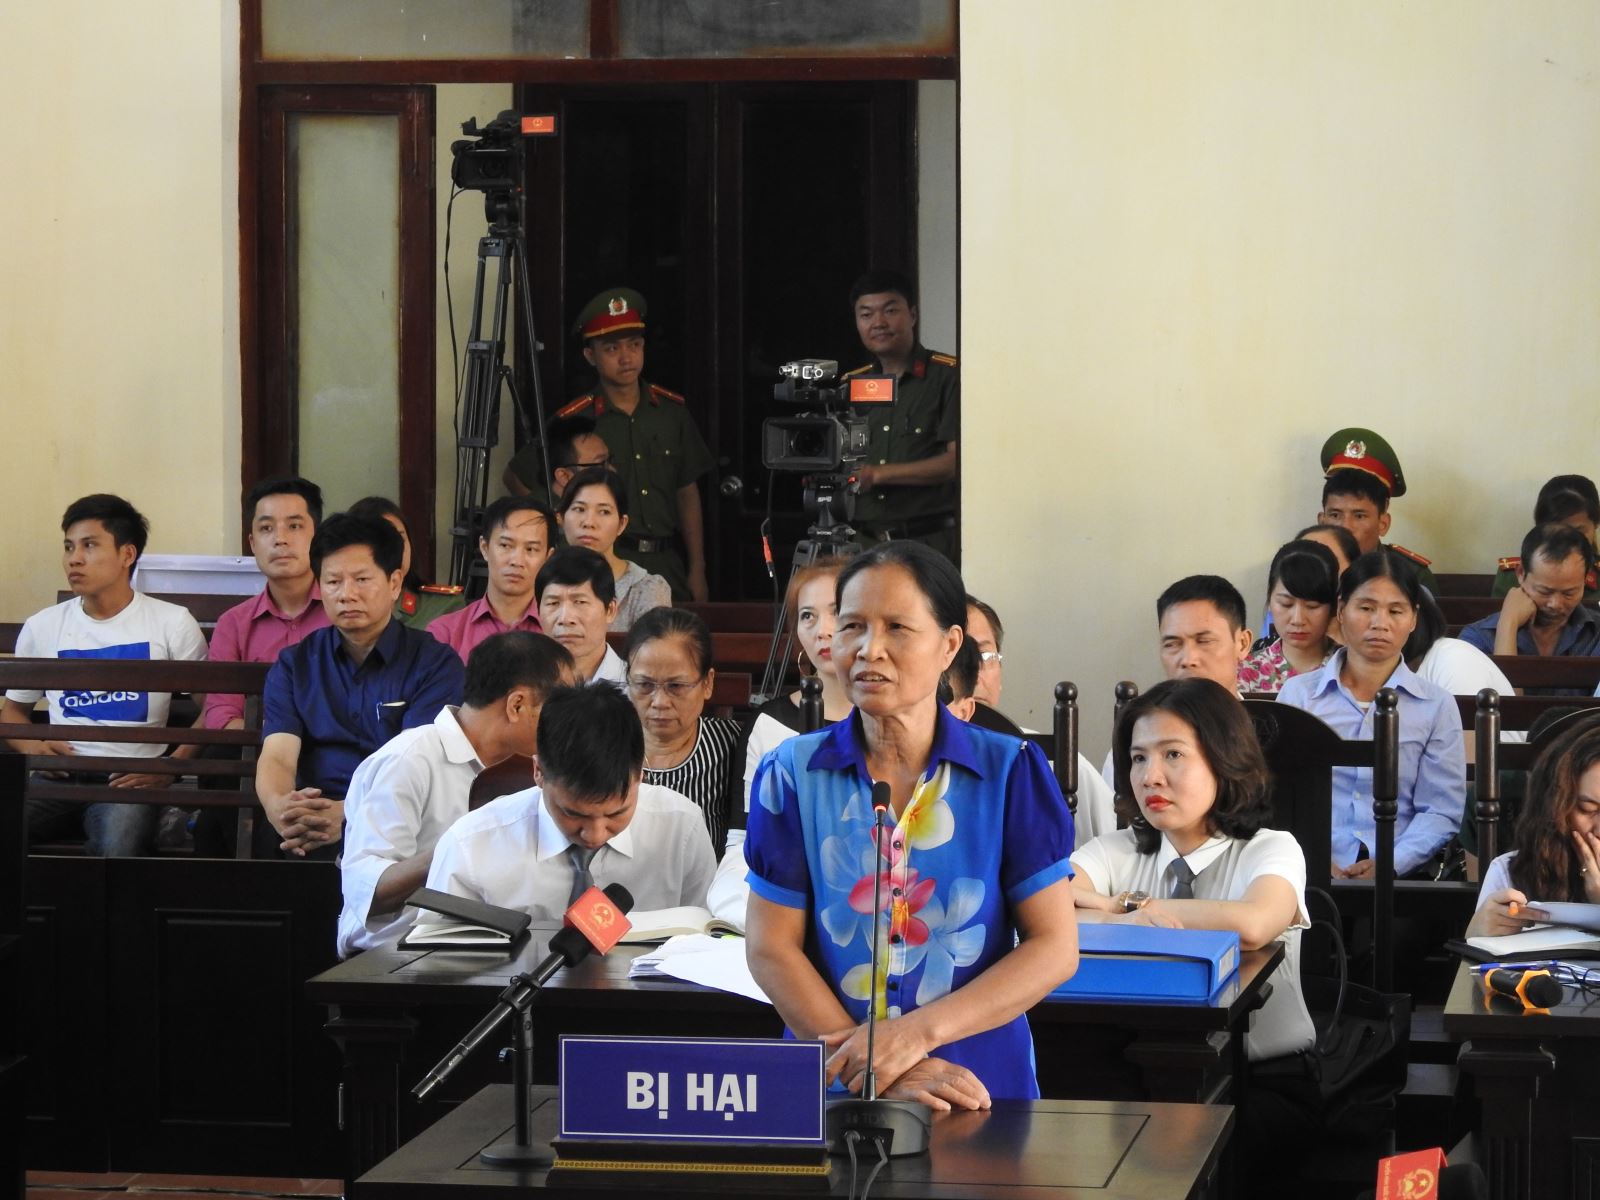  Xét xử bác sĩ Lương: Chân dung người còn sống tại tòa 